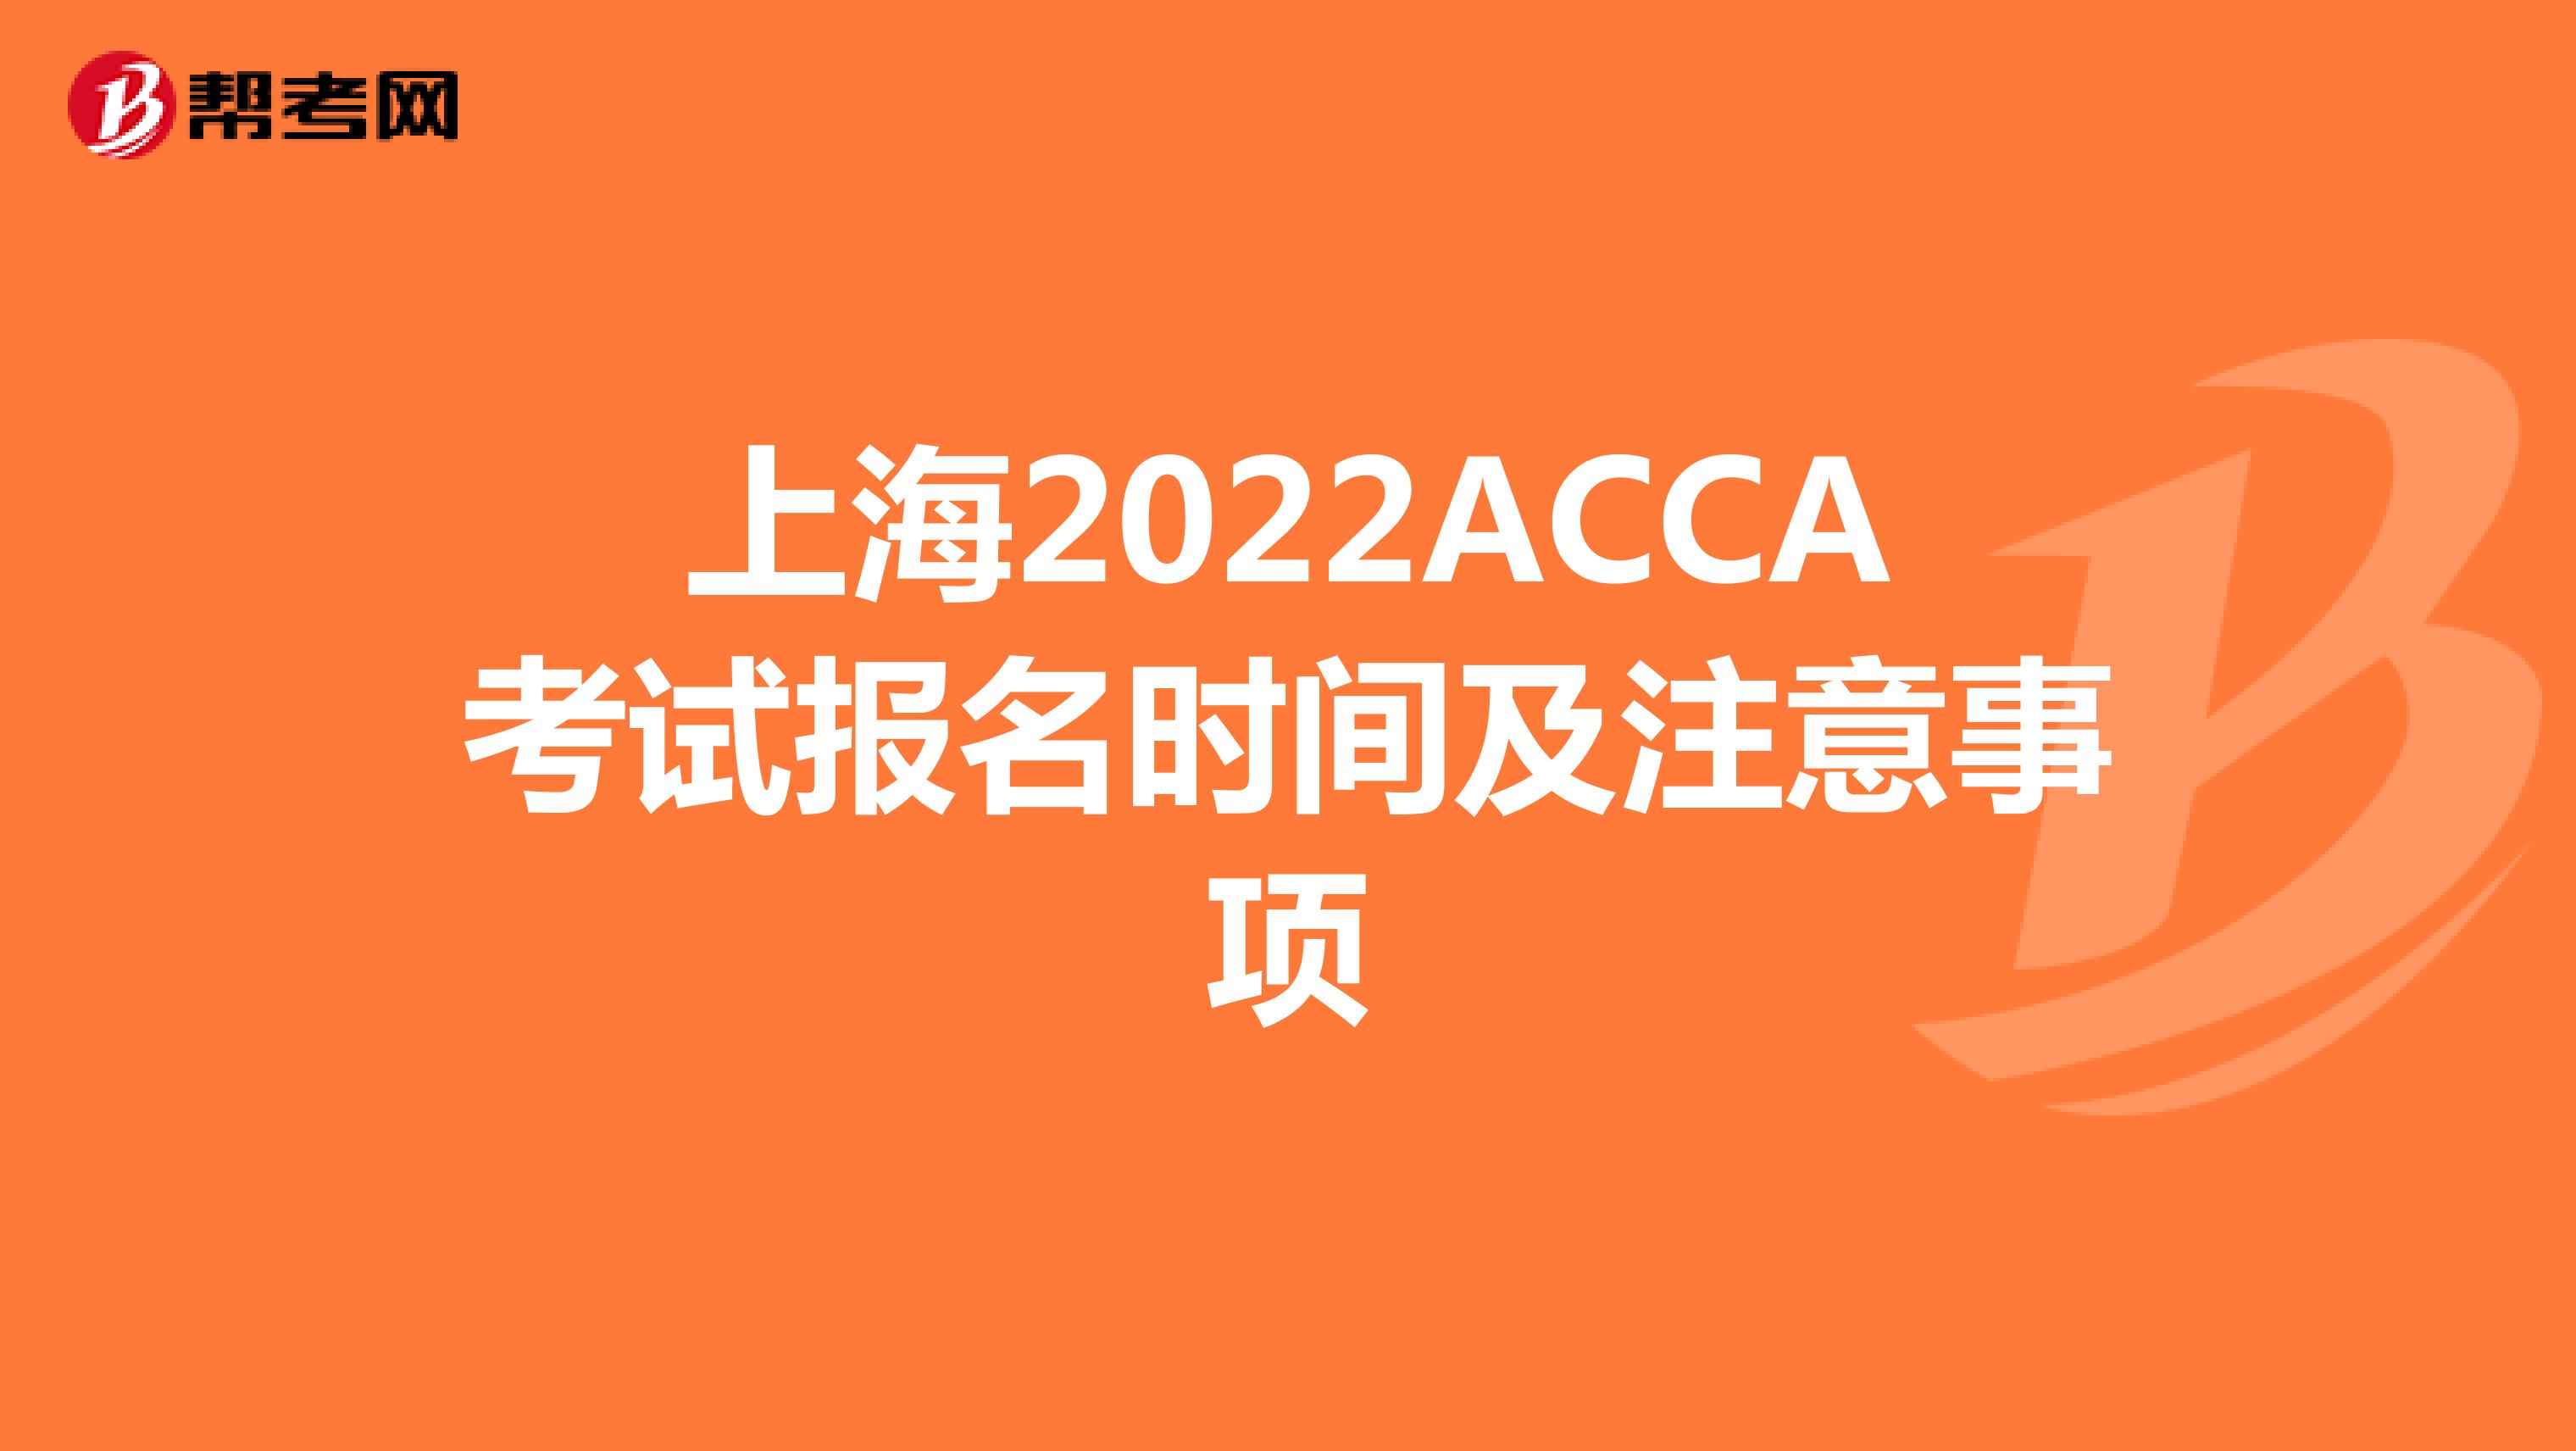 上海2022ACCA考试报名时间及注意事项